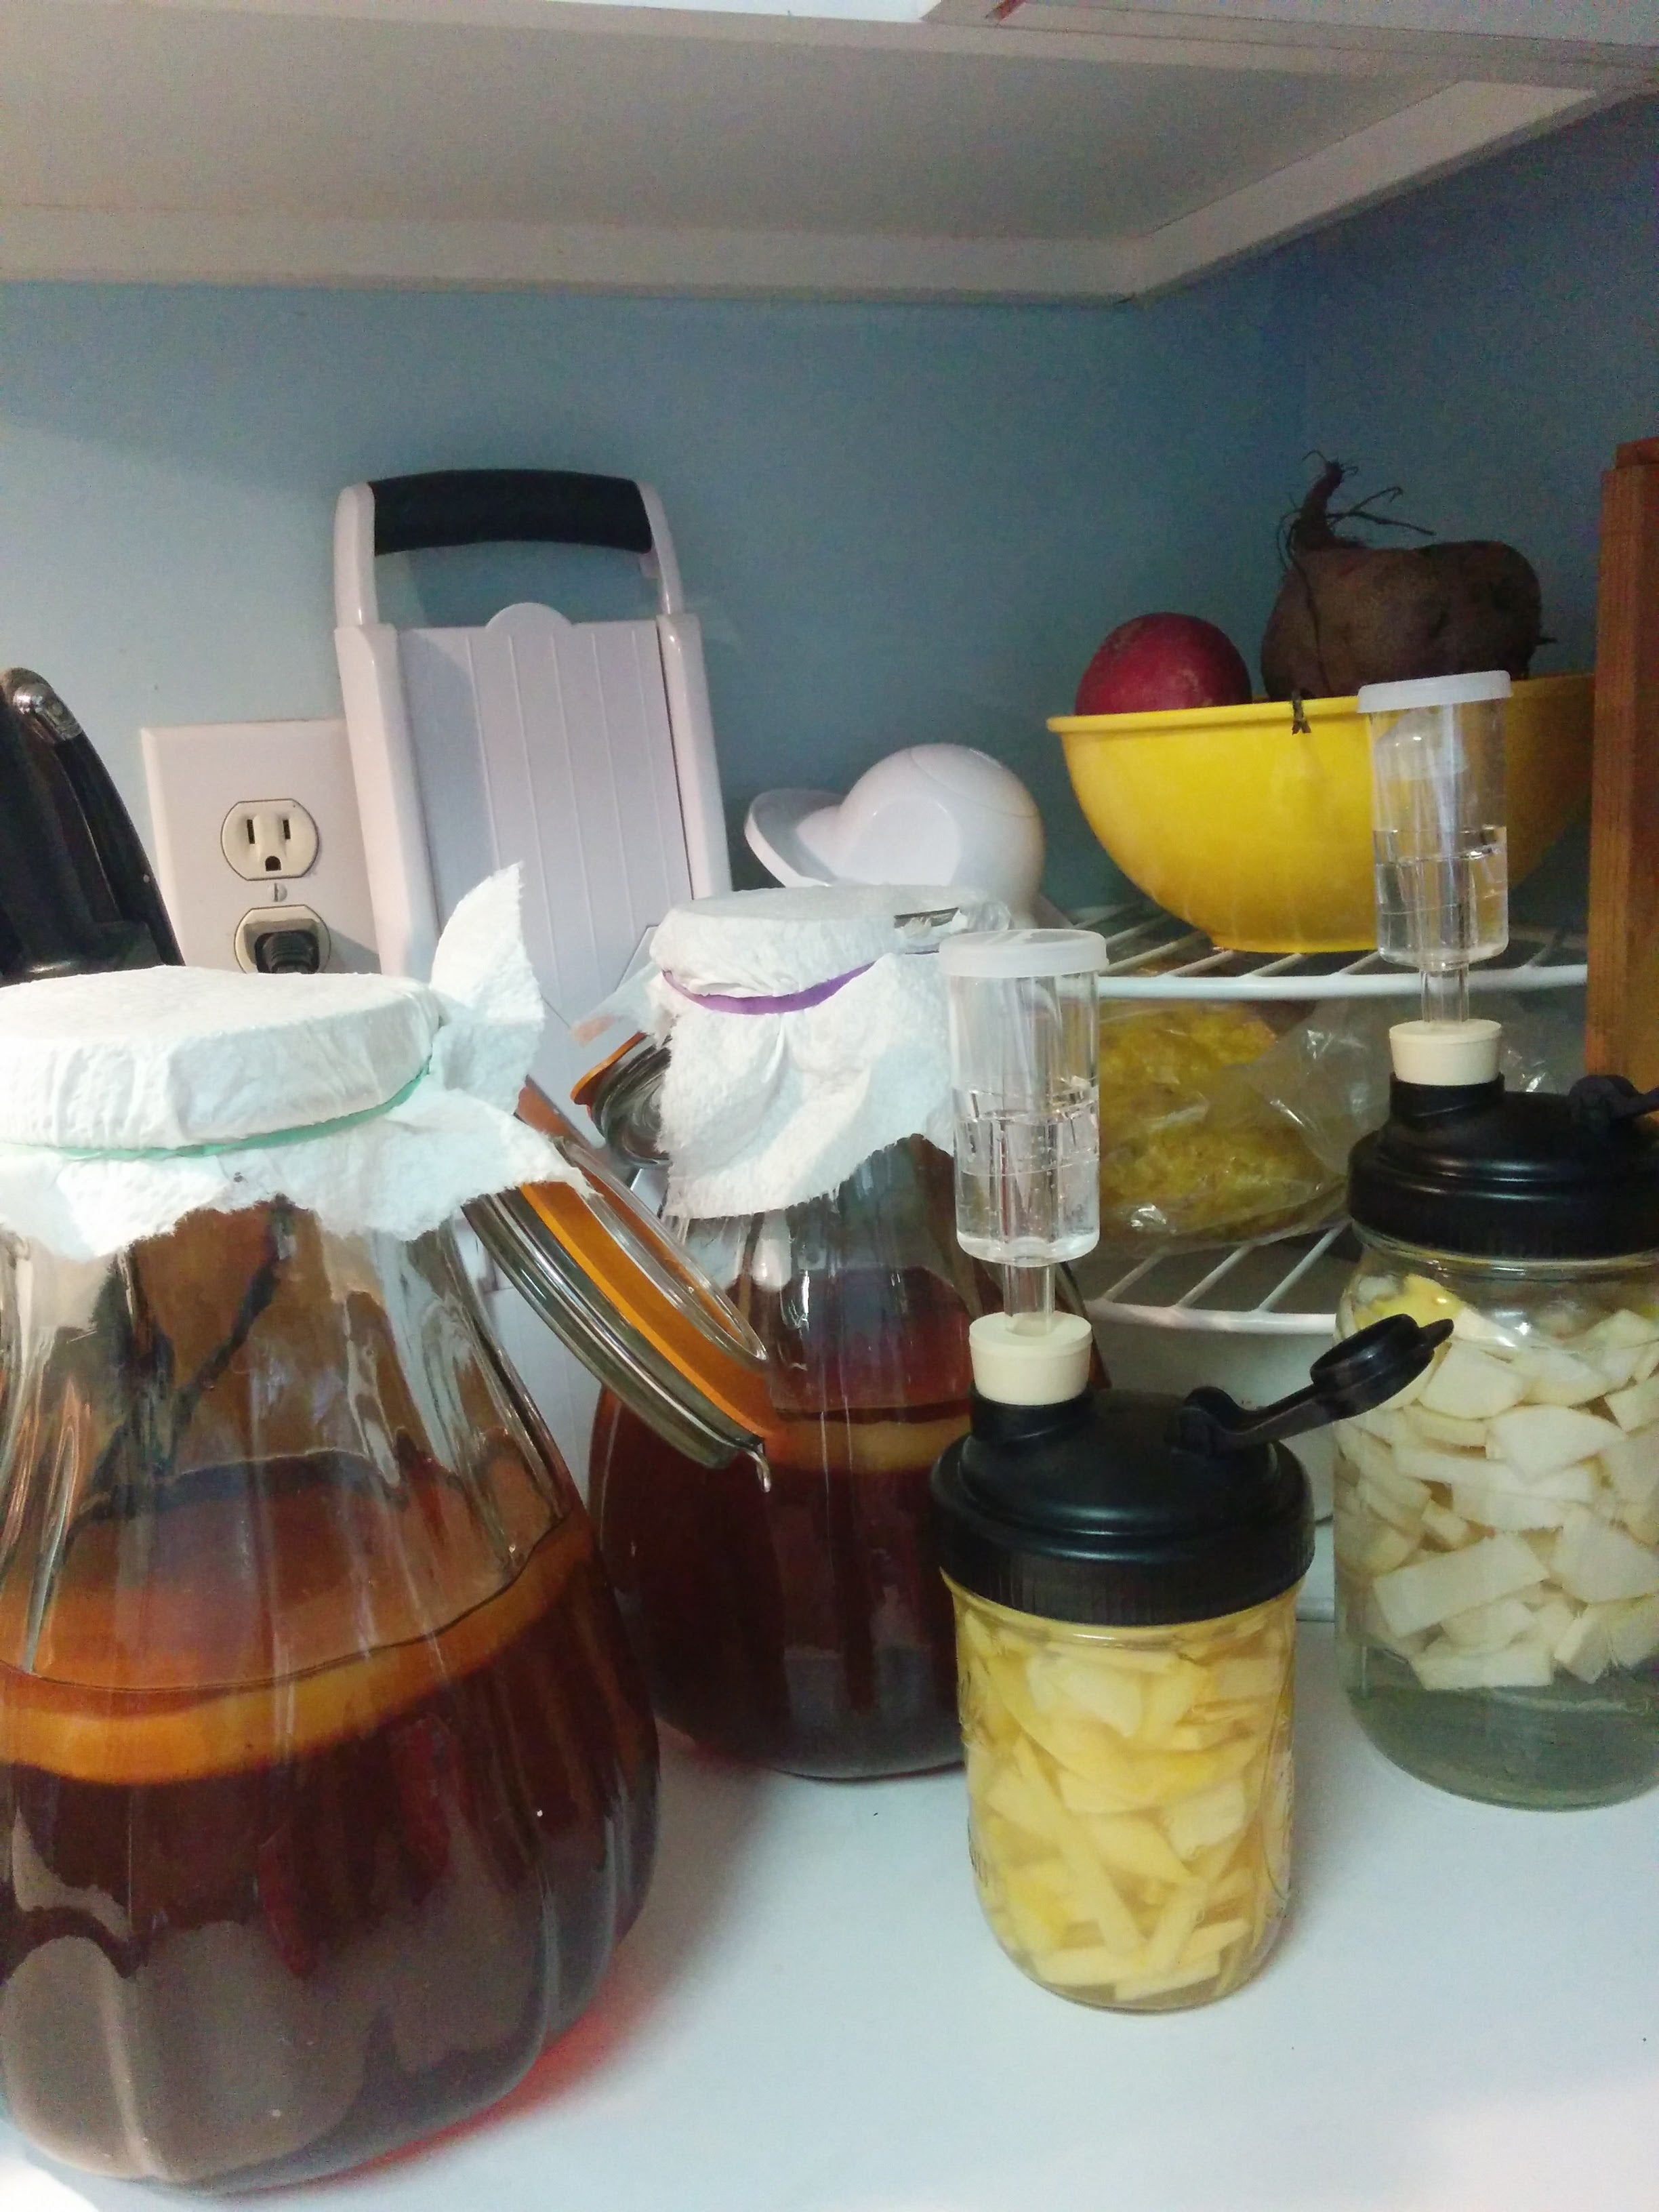 kombucha jars and other fermentations